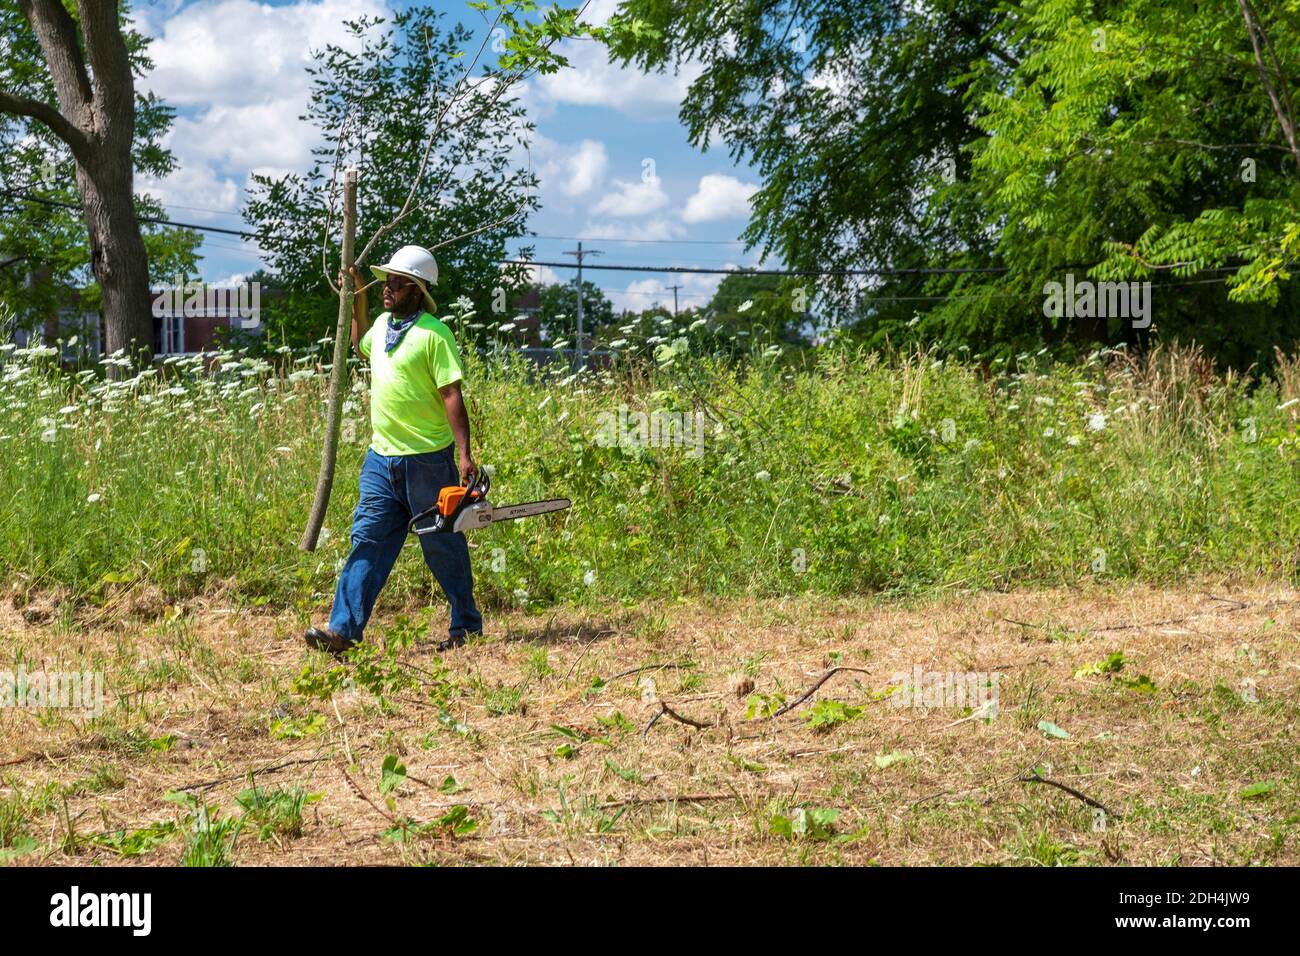 Flint, Michigan - i lavoratori del Michigan Grounds Crew partecipano a una comunità di pulizia dei lotti vacanti. Foto Stock